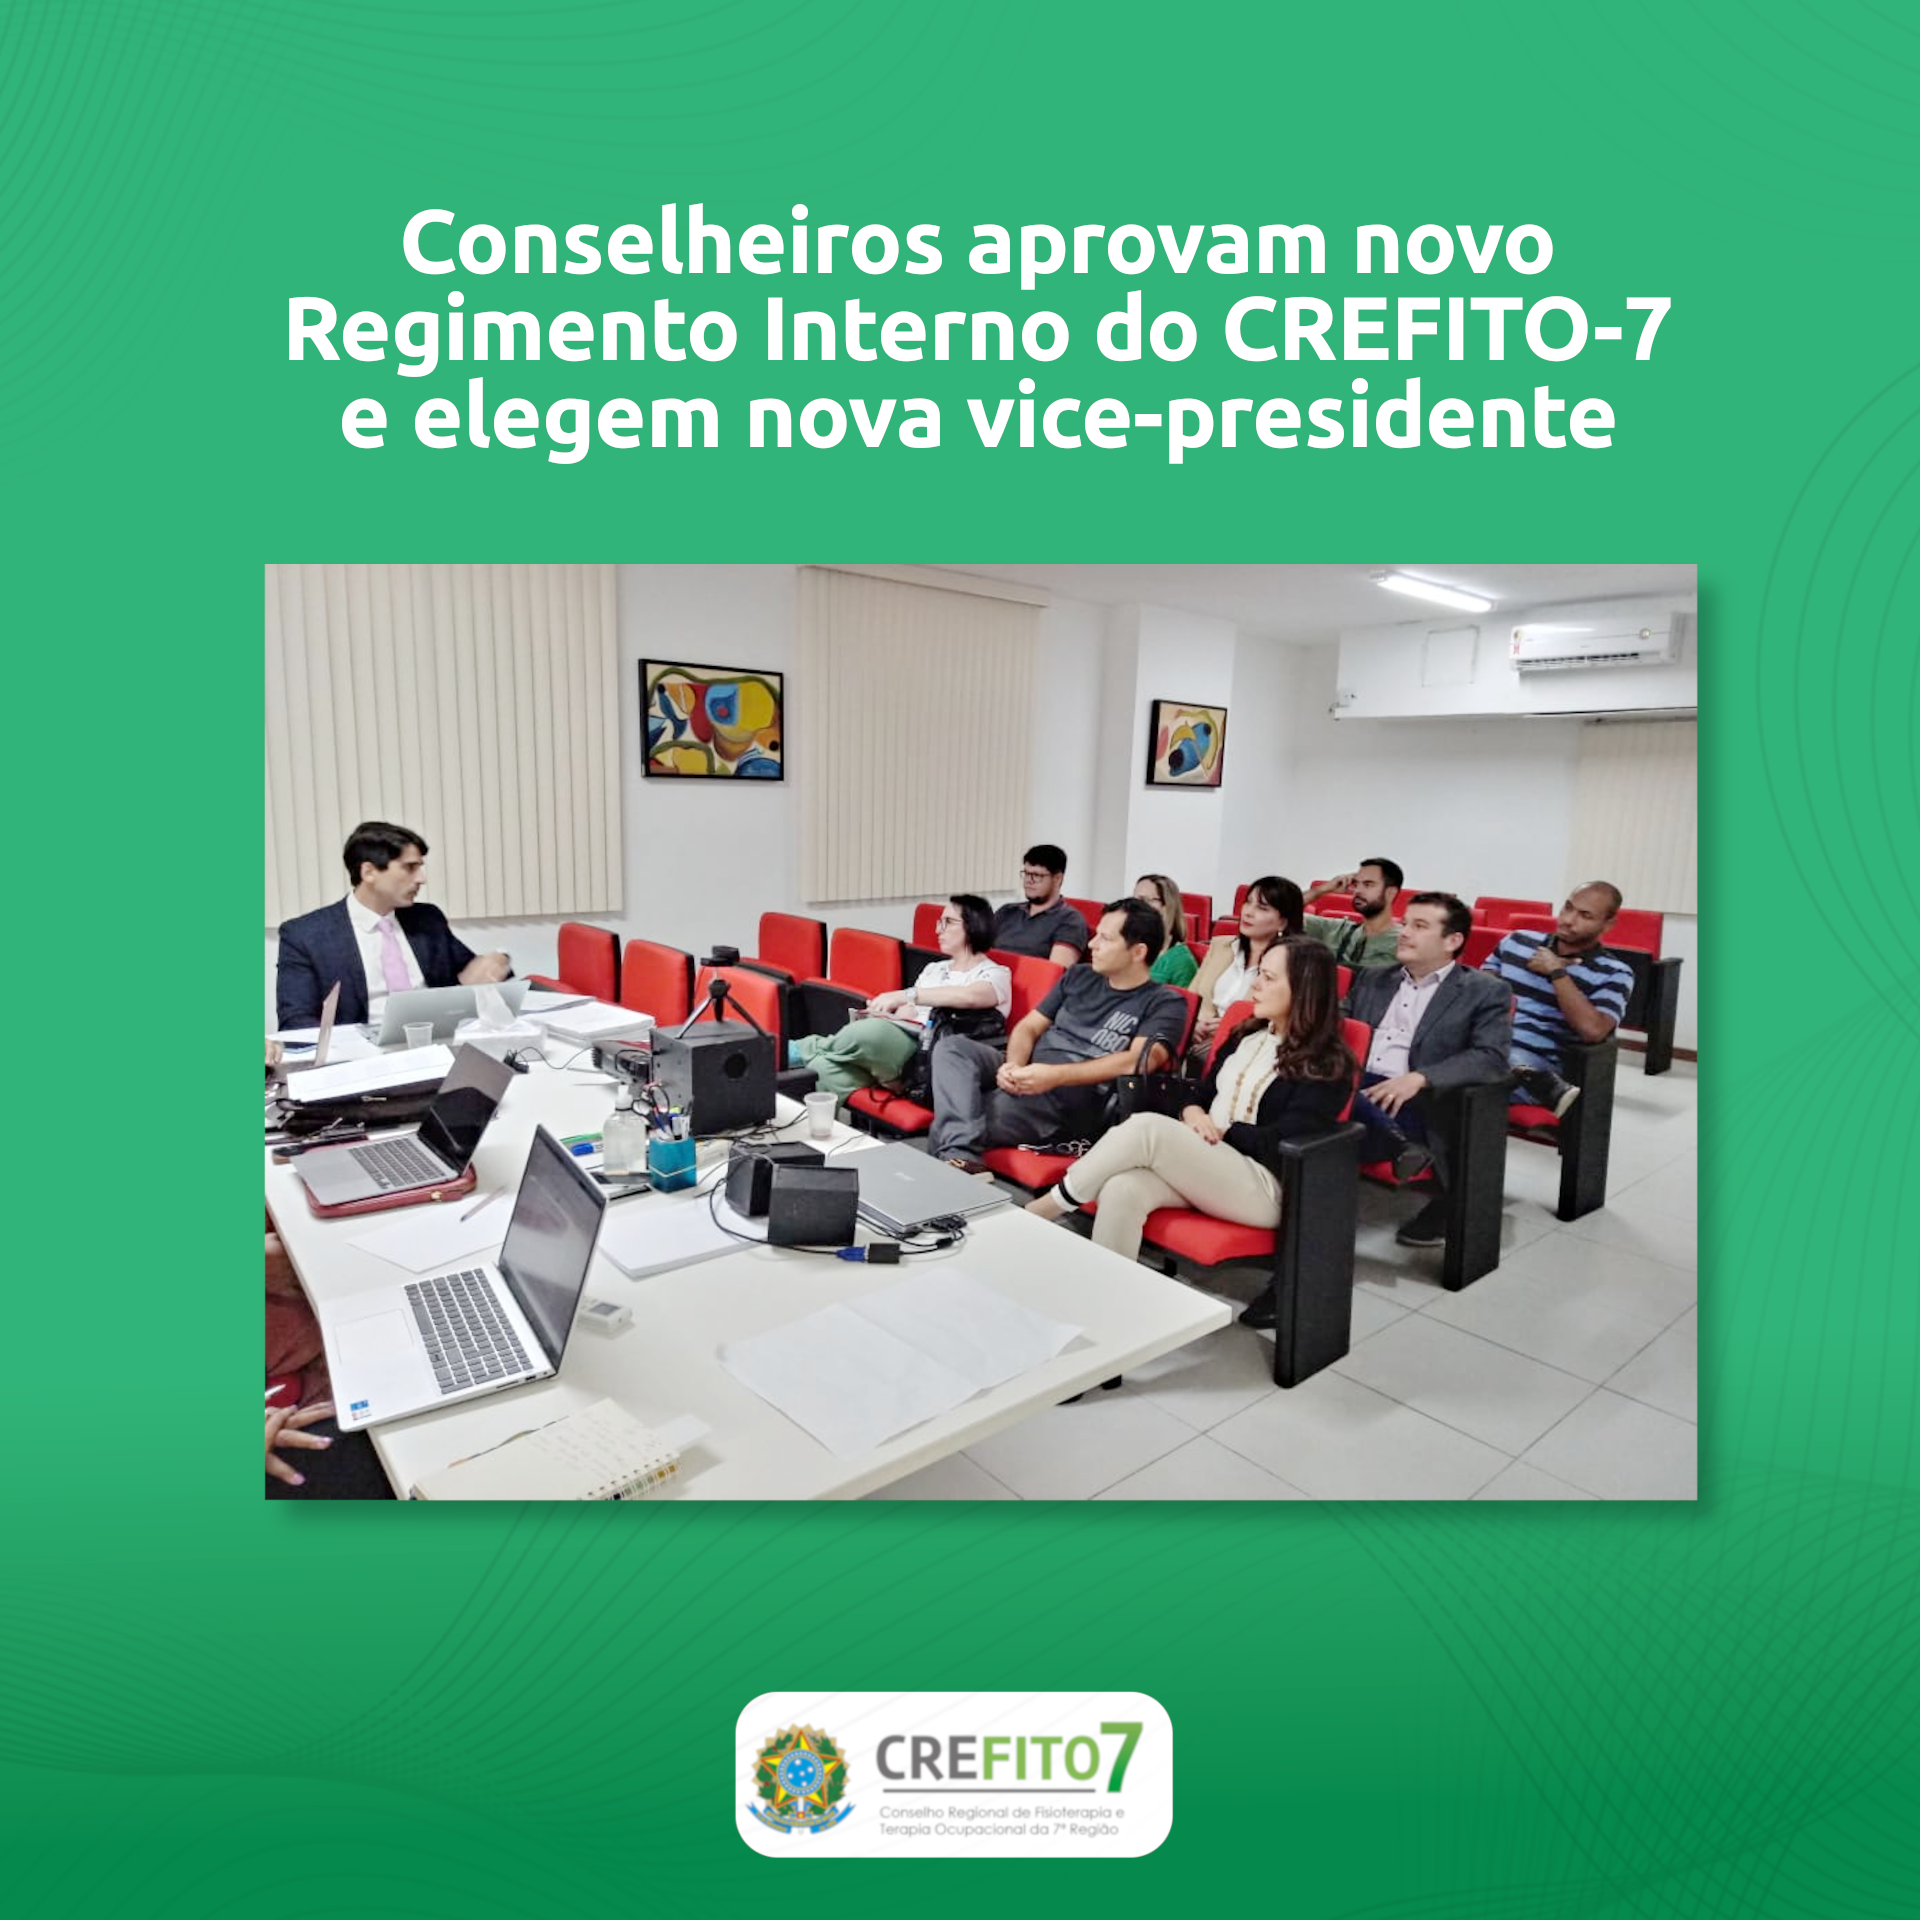 Conselheiros aprovam novo Regimento Interno do CREFITO-7 e elegem nova vice-presidente